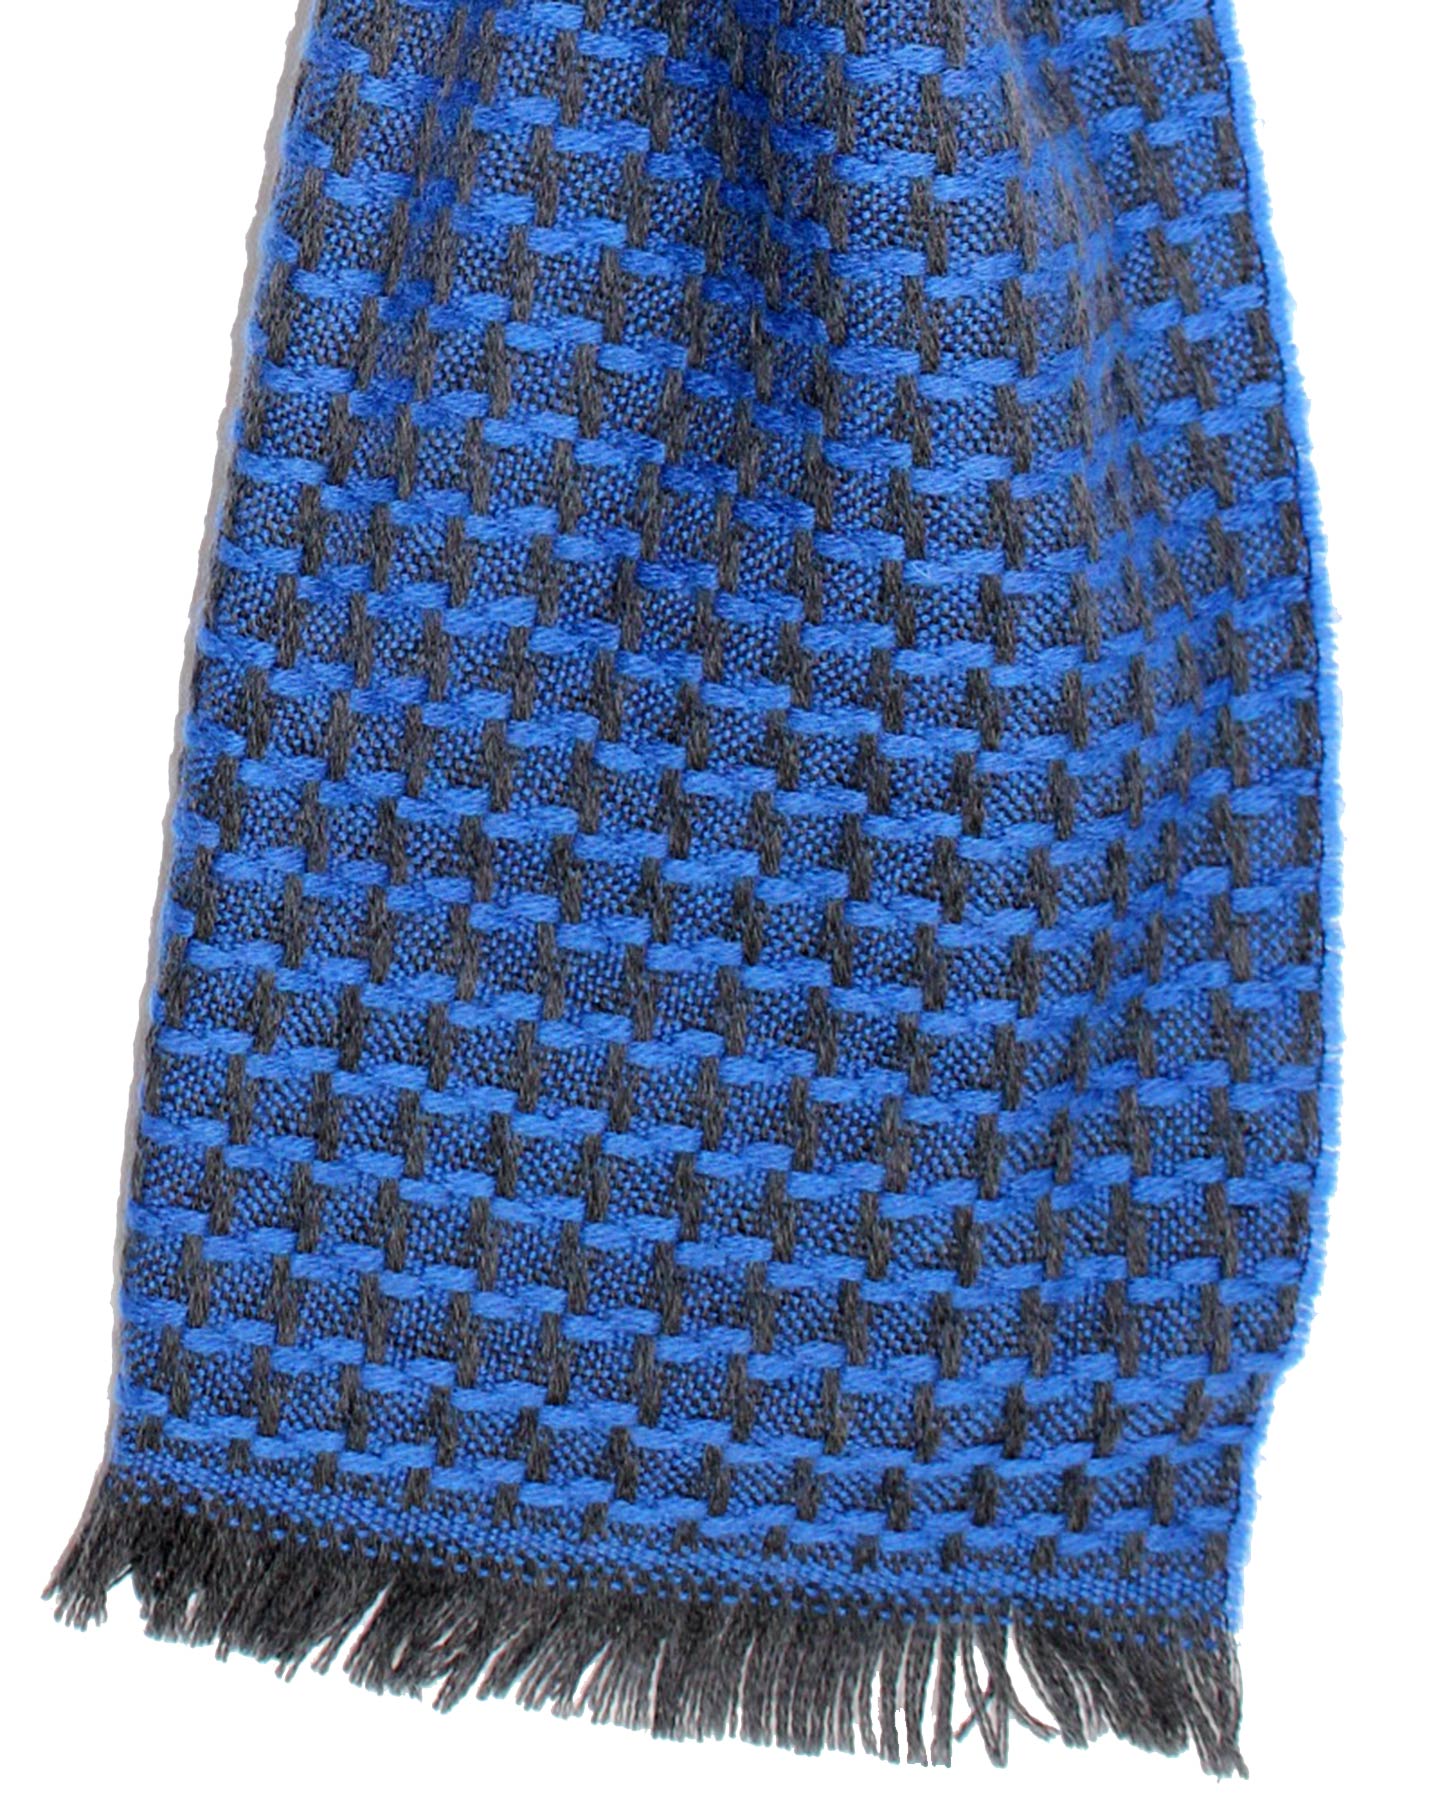 Sartorio Scarf Royal Blue Houndstooth - Luxury Wool Shawl